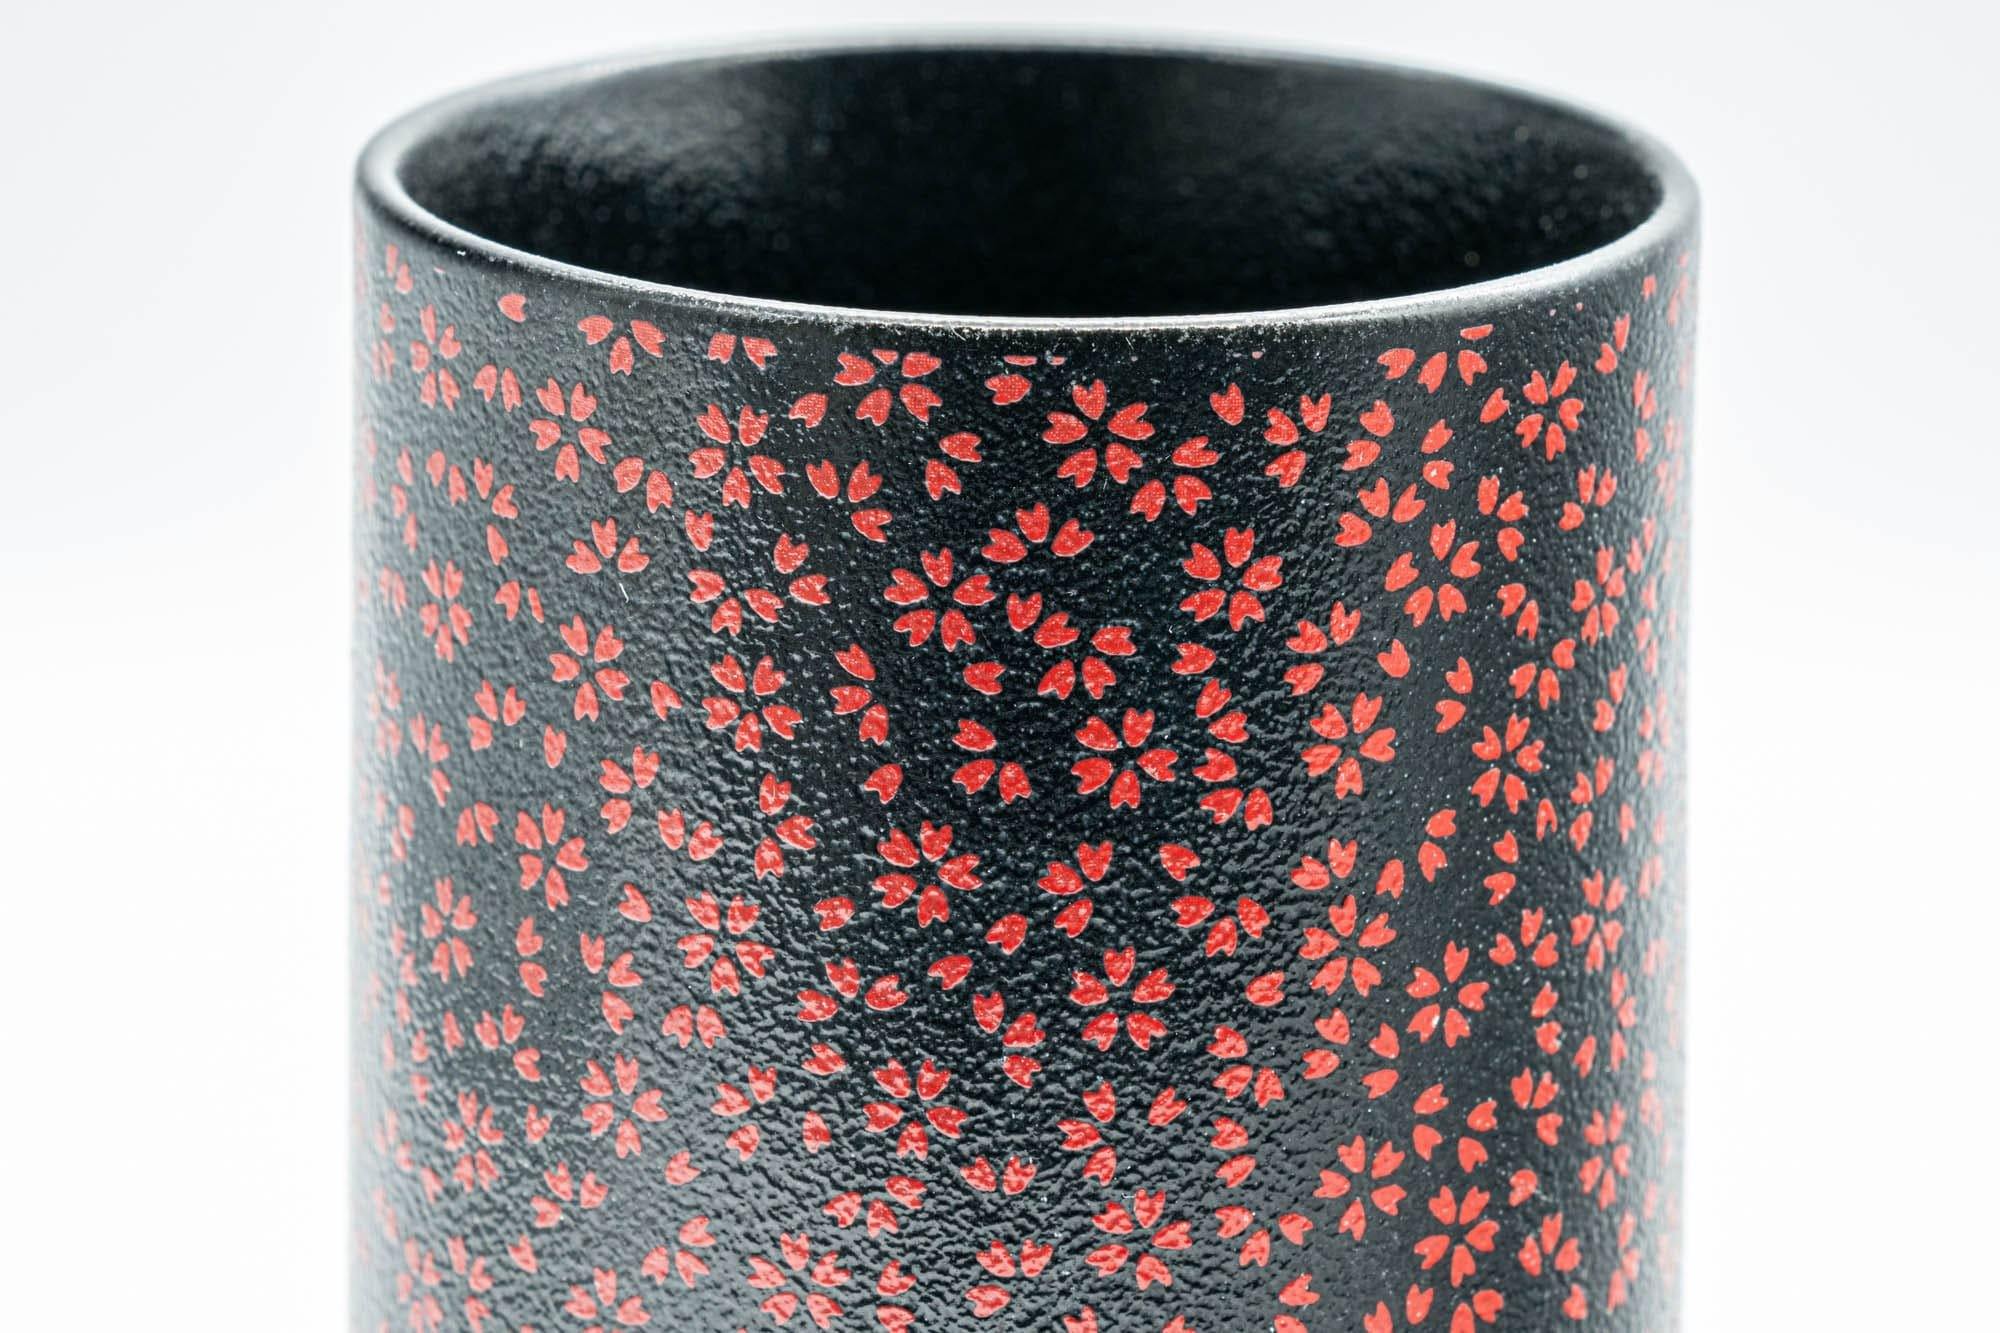 Japanese Teacup - Black Red Floral Tsutsu-gata Yunomi  - 180ml - Tezumi